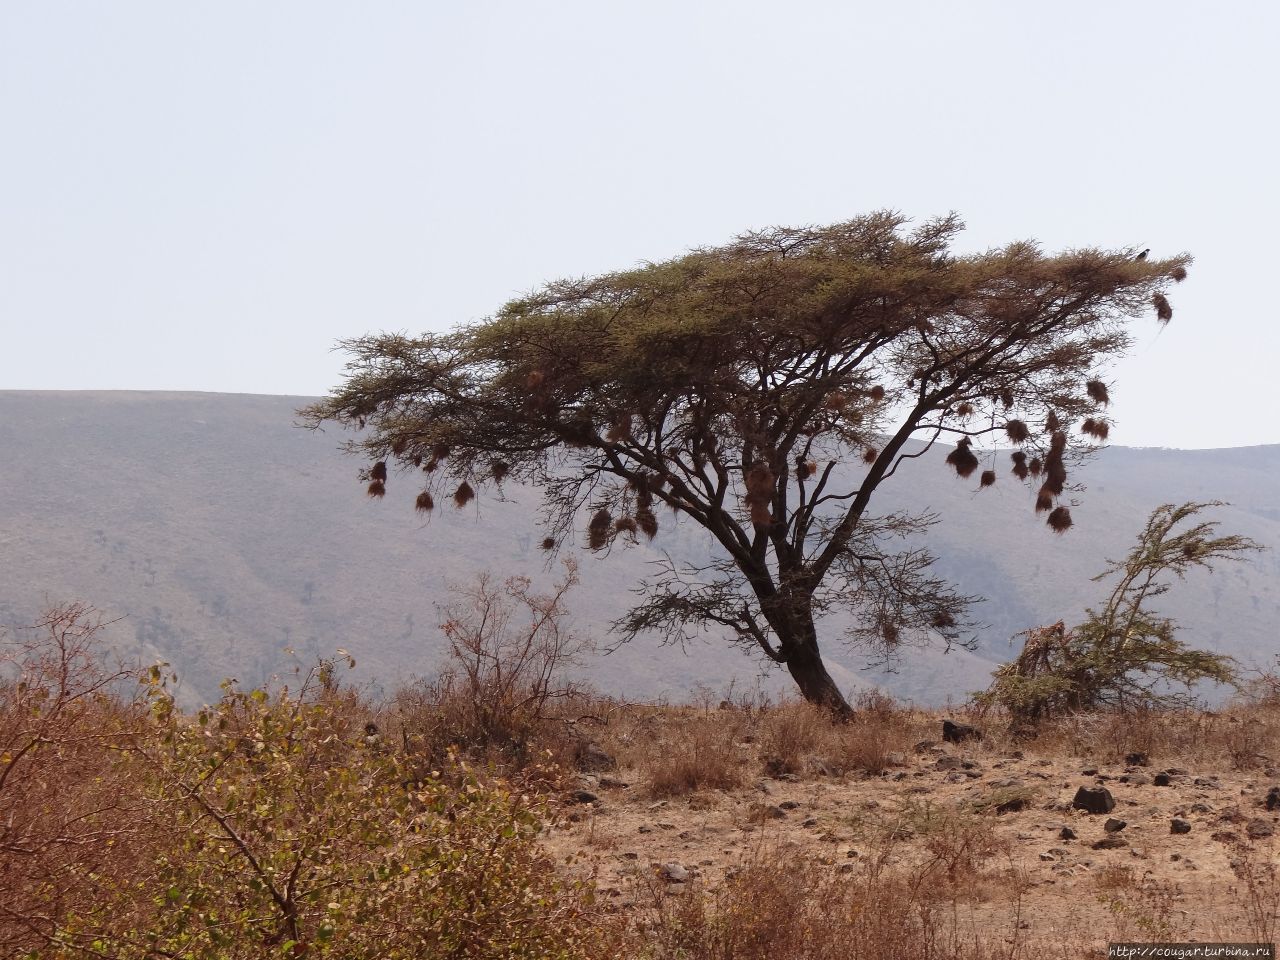 Дерево акации, с которого, словно елочные шары, свисают гнезда ткачиков. Нгоронгоро (заповедник в кратере вулкана), Танзания